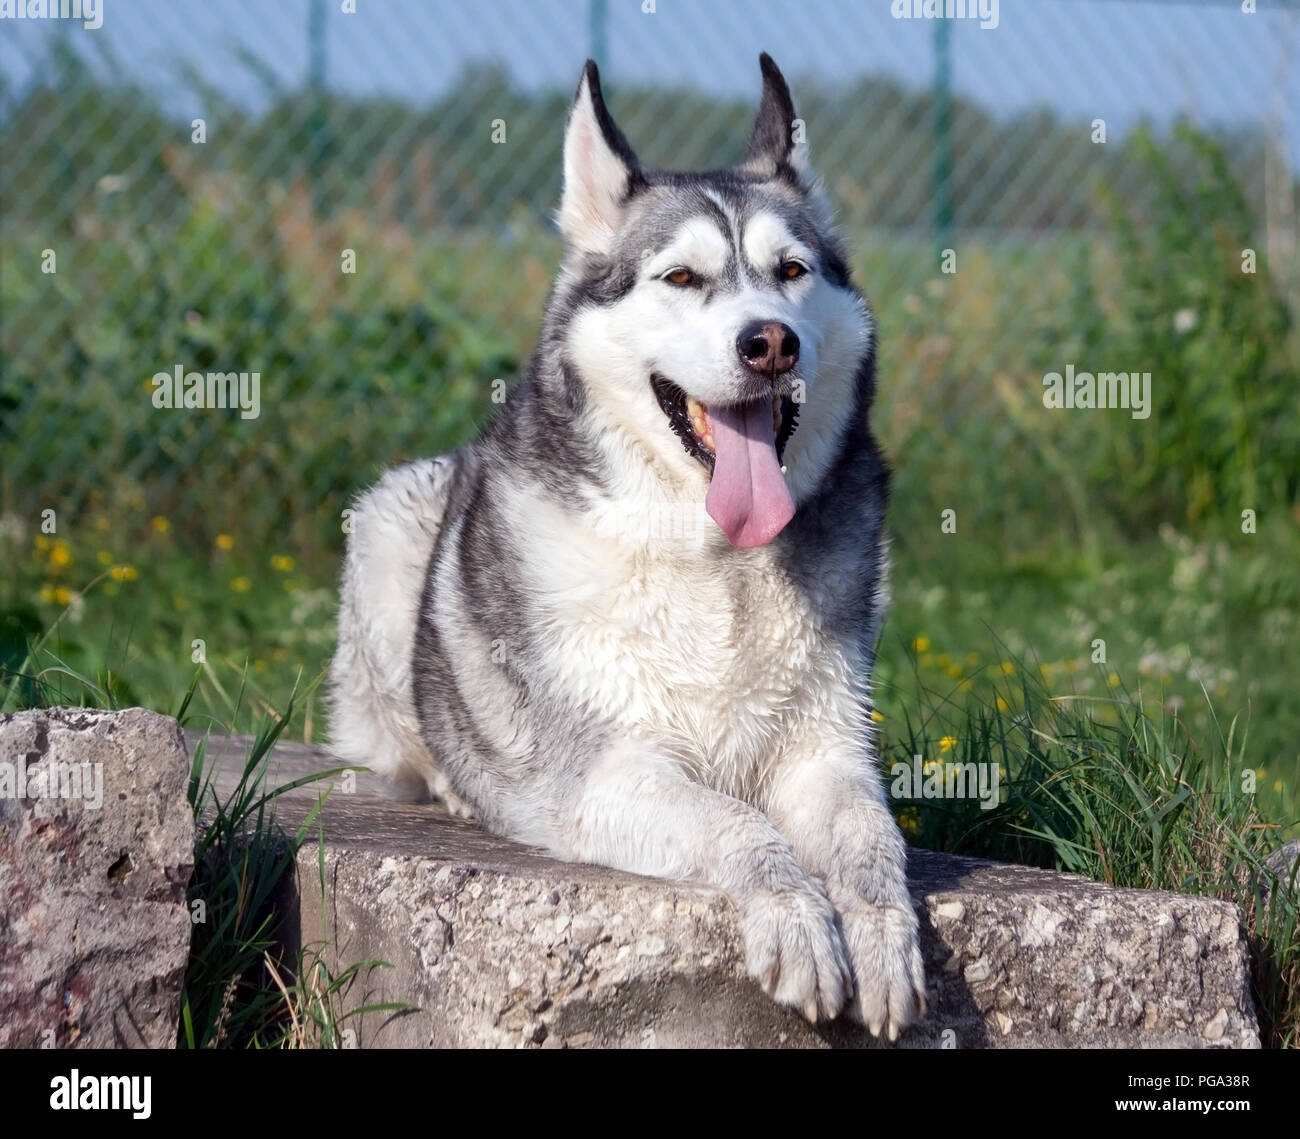 Ritratto di un cane Alaskan Malamute giace sulle pietre di grandi dimensioni attorno alla quale è avvolta una verde erba, sullo sfondo di una recinzione a griglia, un animale guarda nella telecamera, Foto Stock